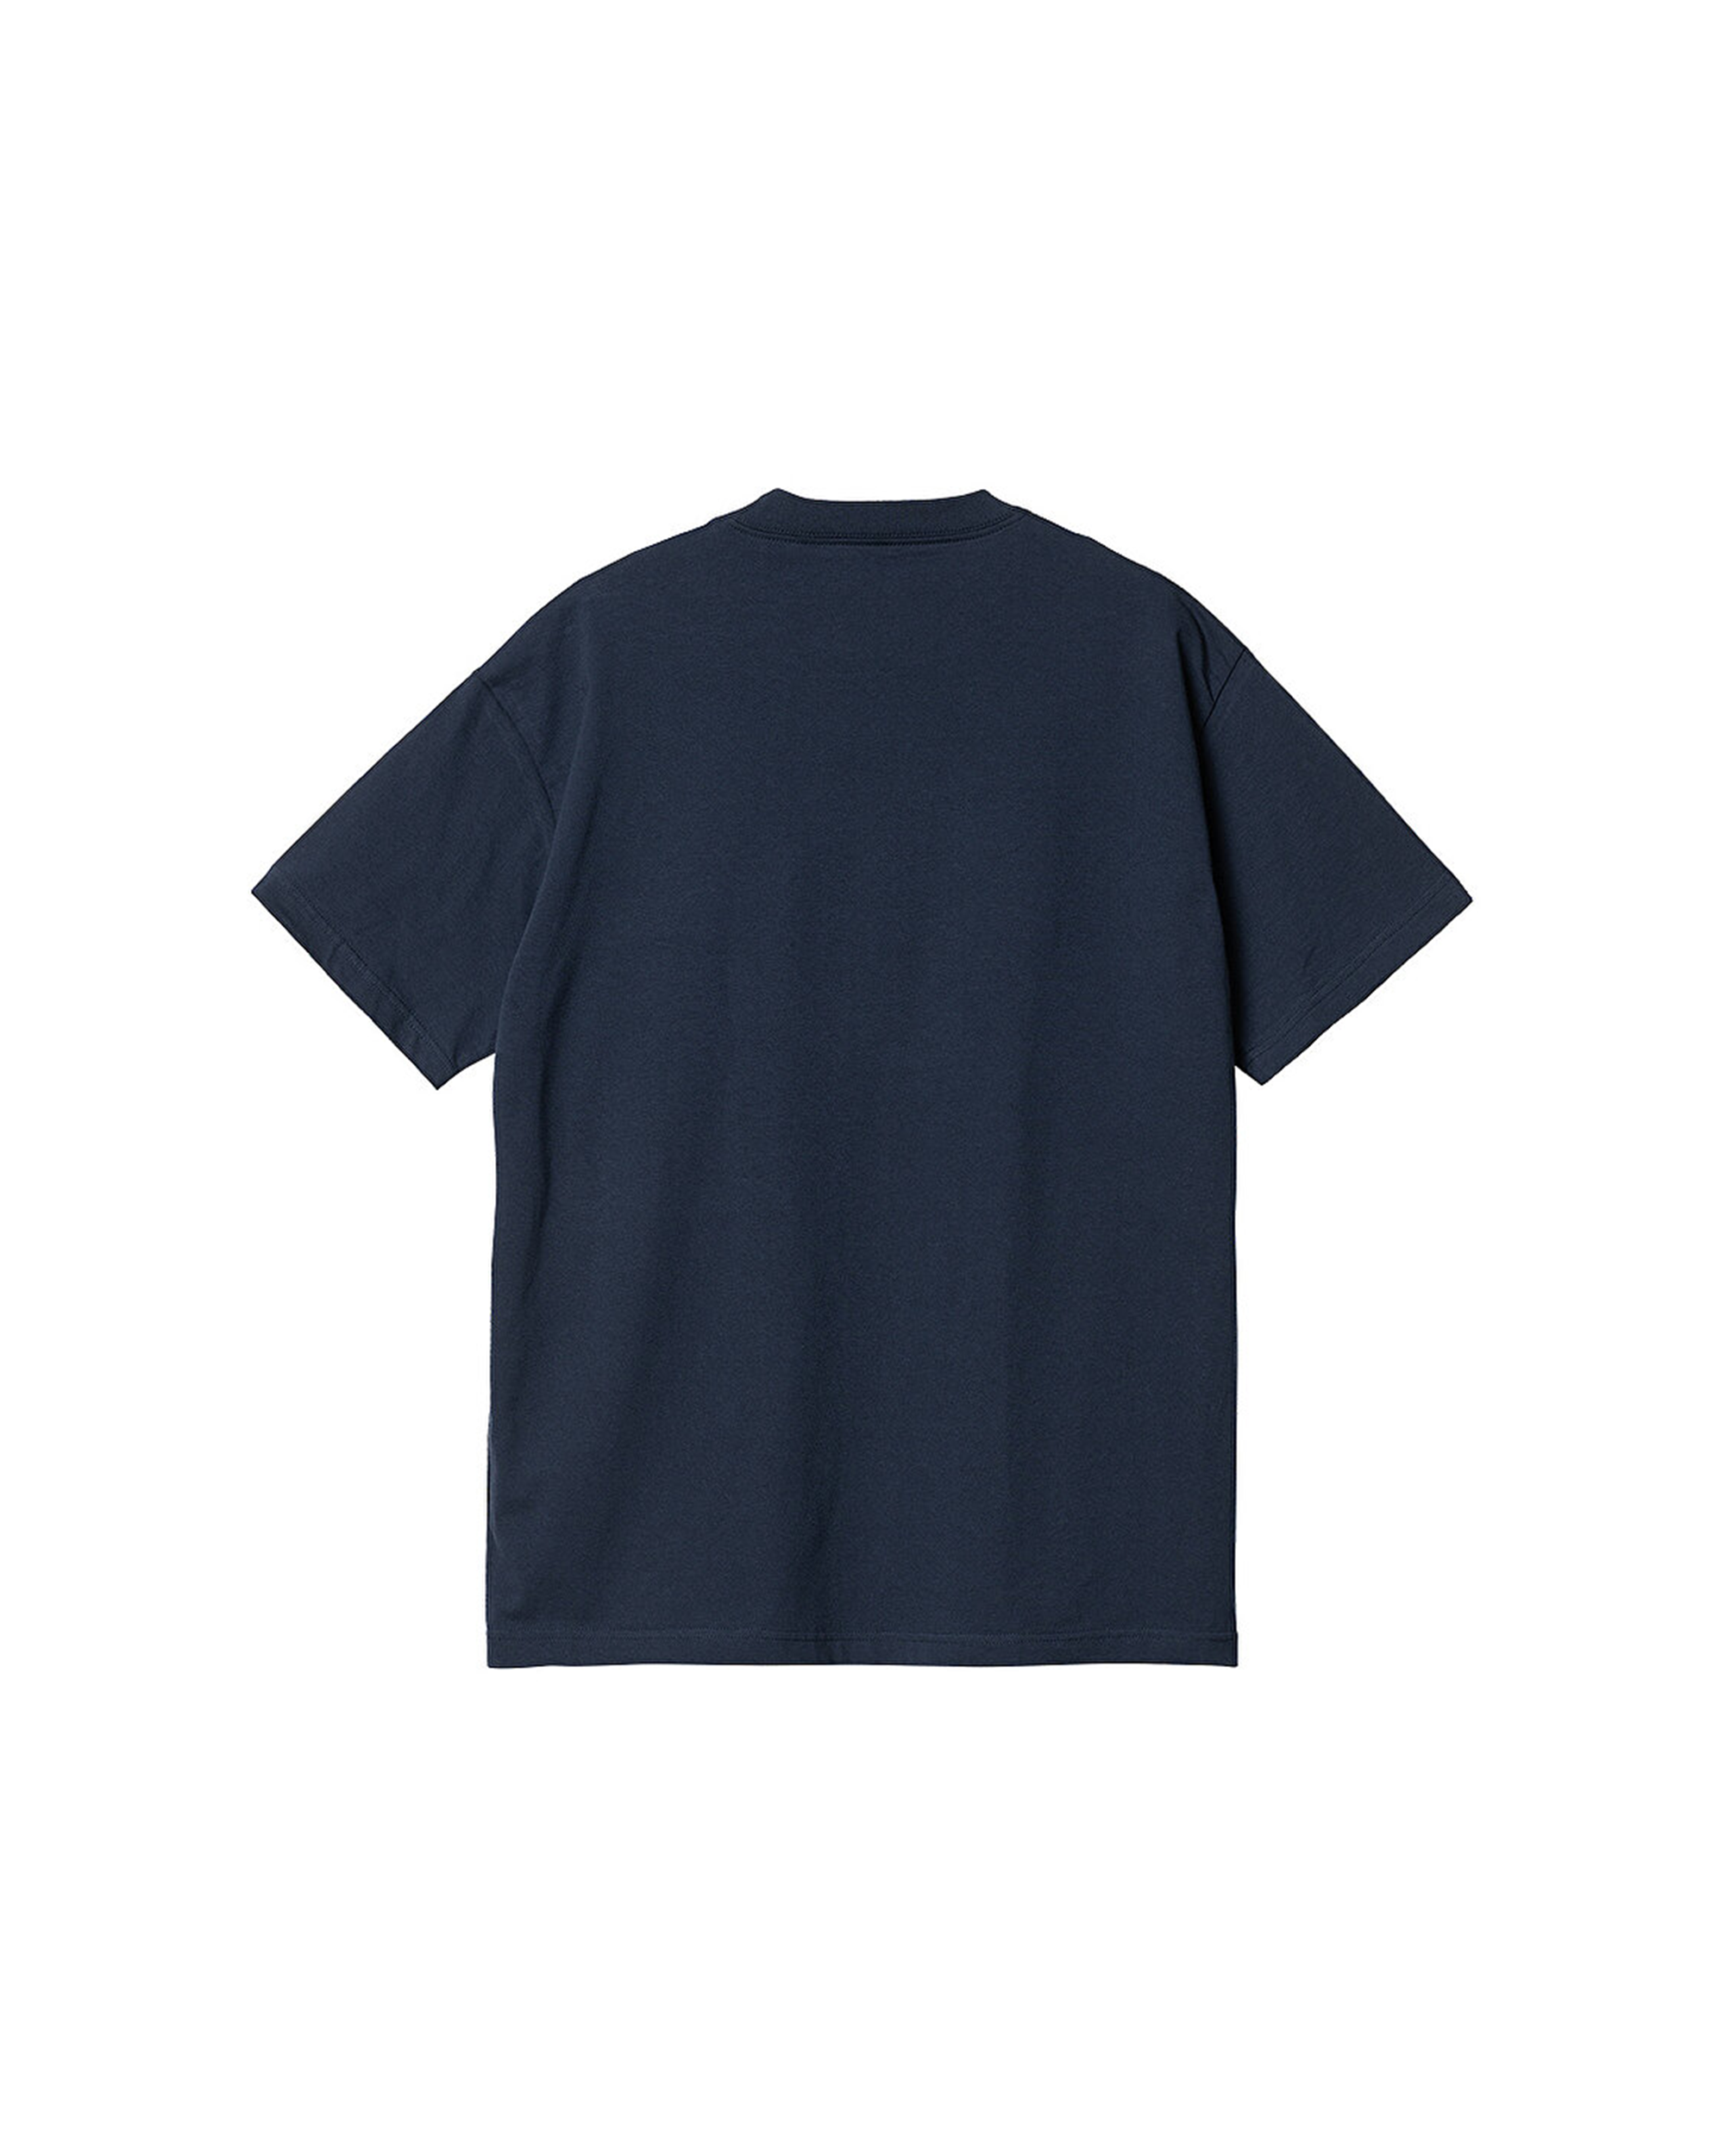 S/S Throw Up T-Shirt - Blue